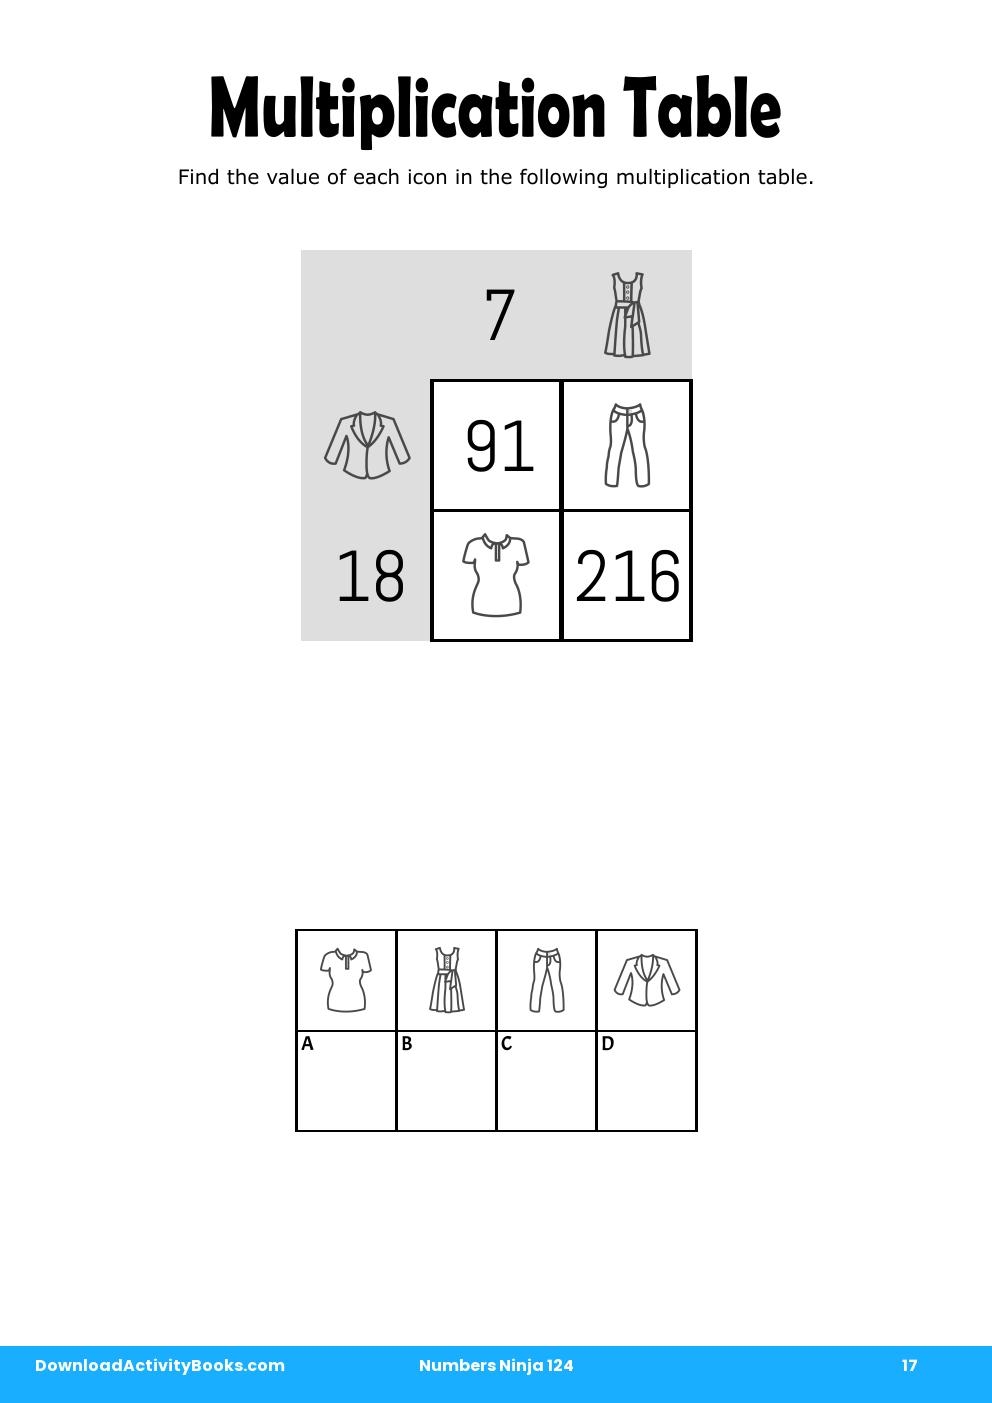 Multiplication Table in Numbers Ninja 124